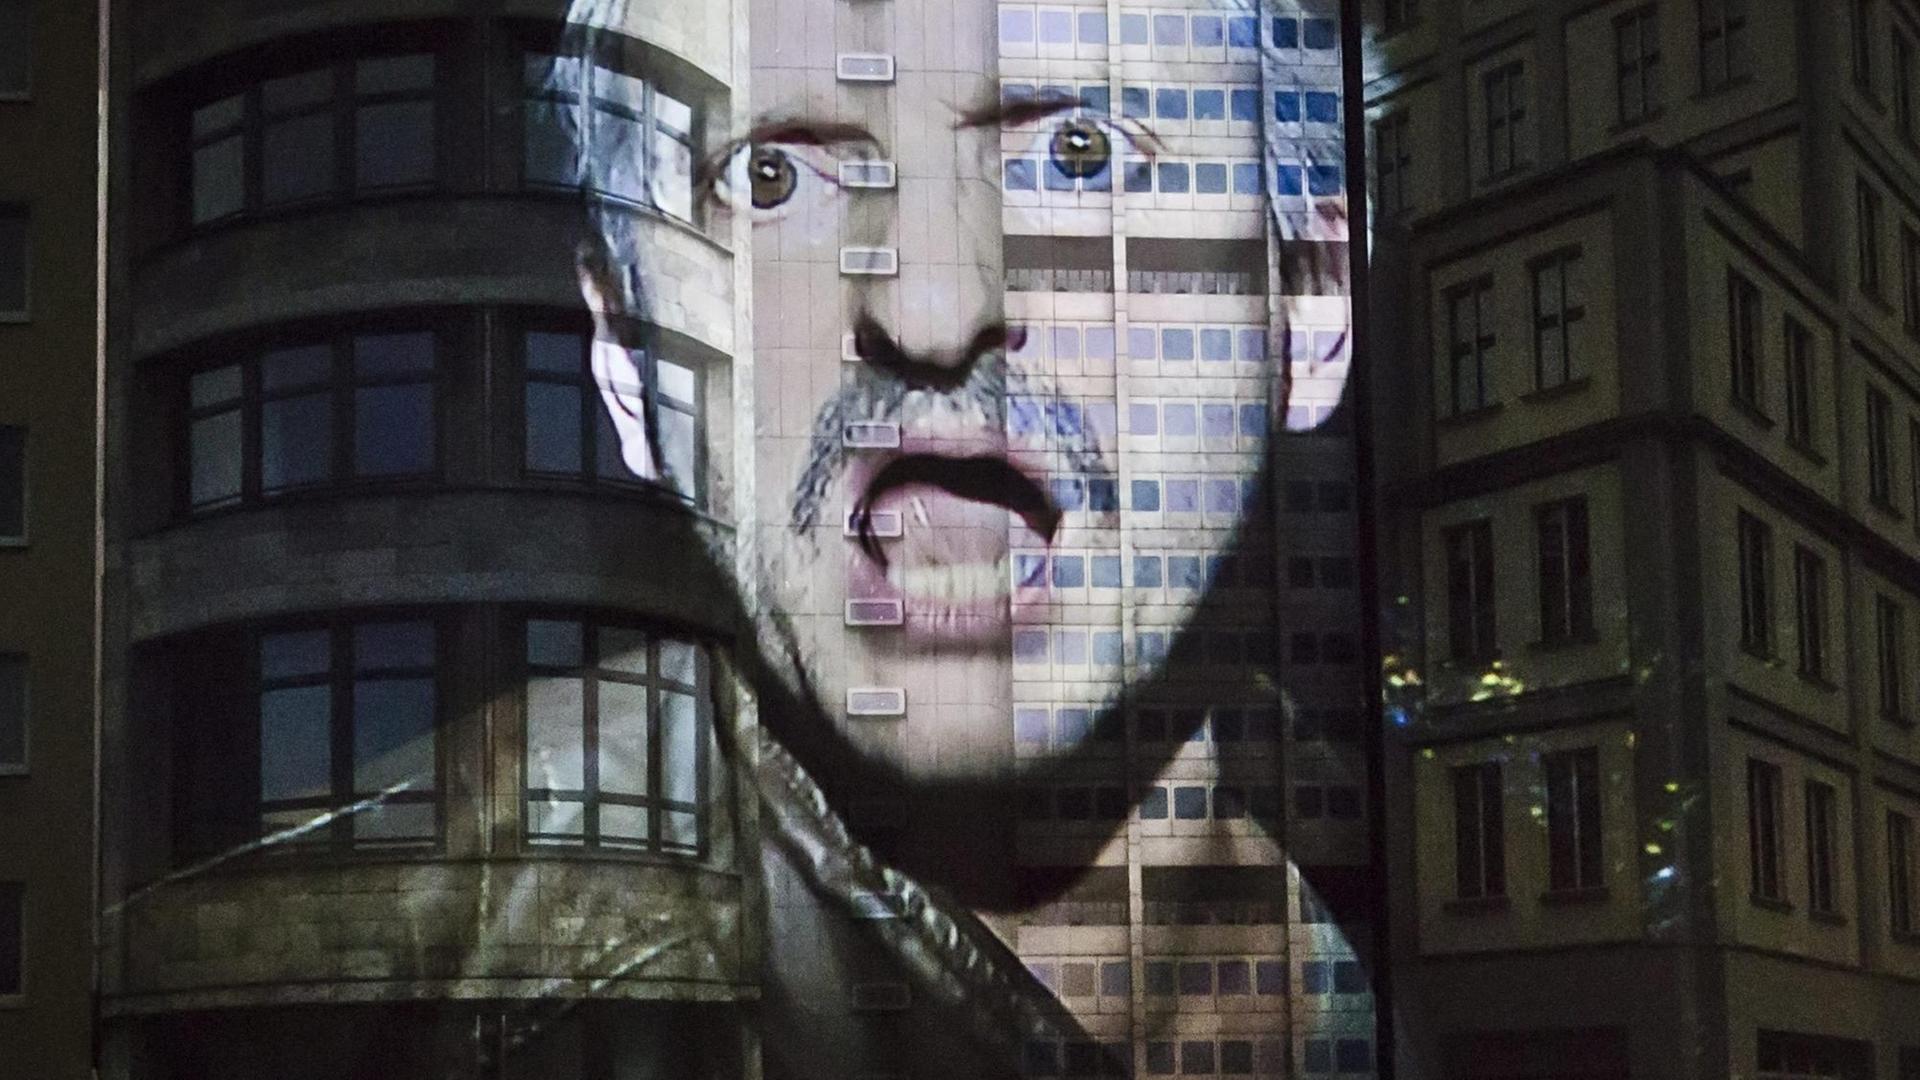 In der Inszenierung wird das Gesicht von Milan Peschel mit empörtem Ausdruck an eine Gebäudefassade projiziert.